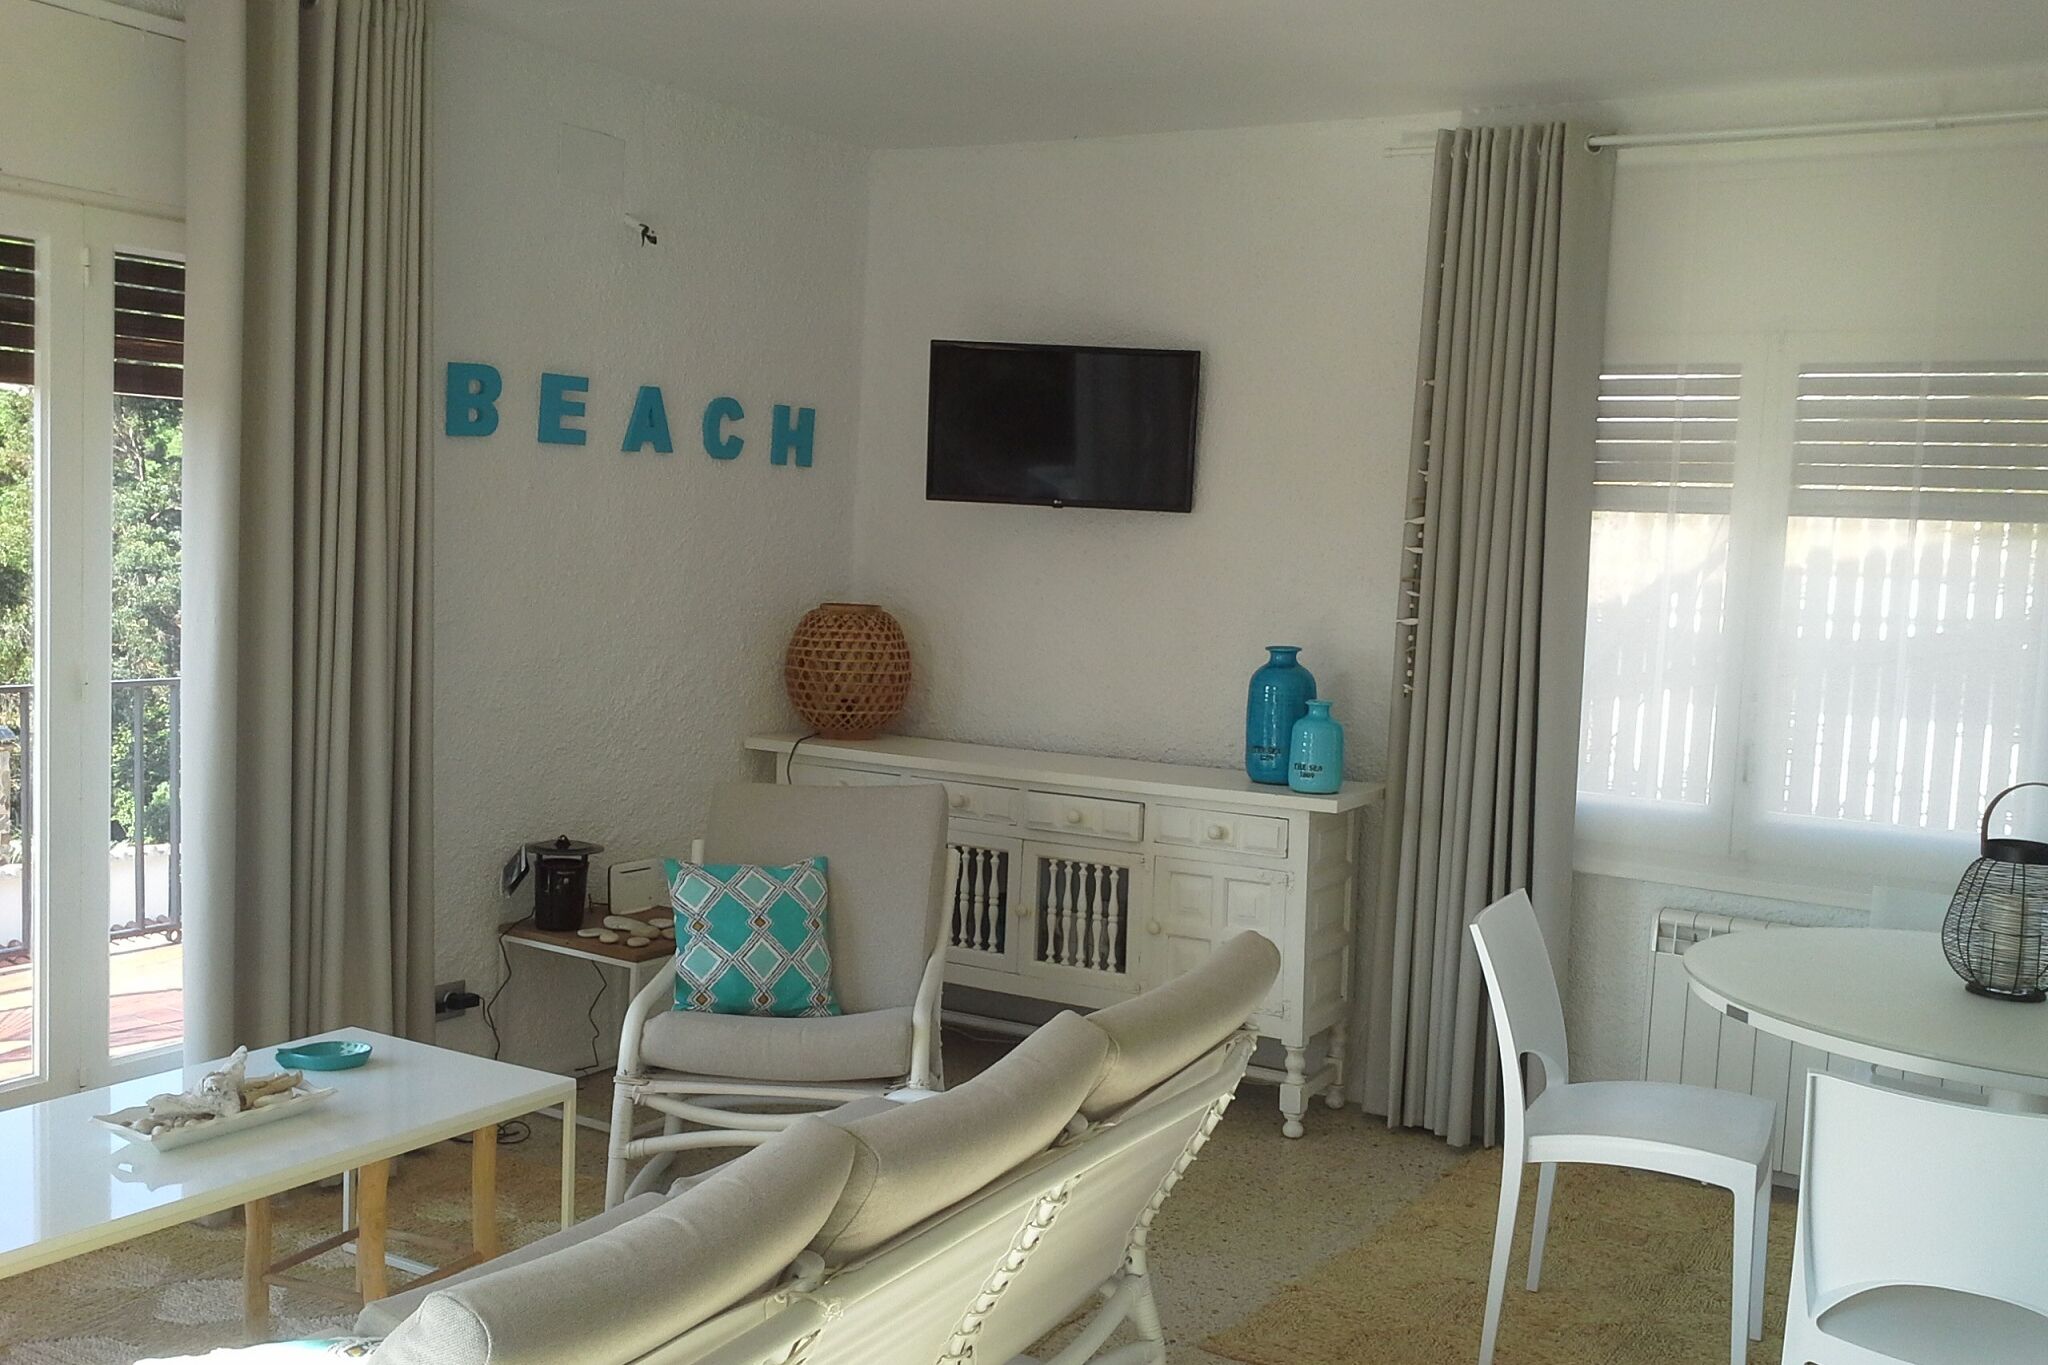 Mooie villa met zeezicht voor 6 in woonwijk Costa Brava op 150m van het strand.